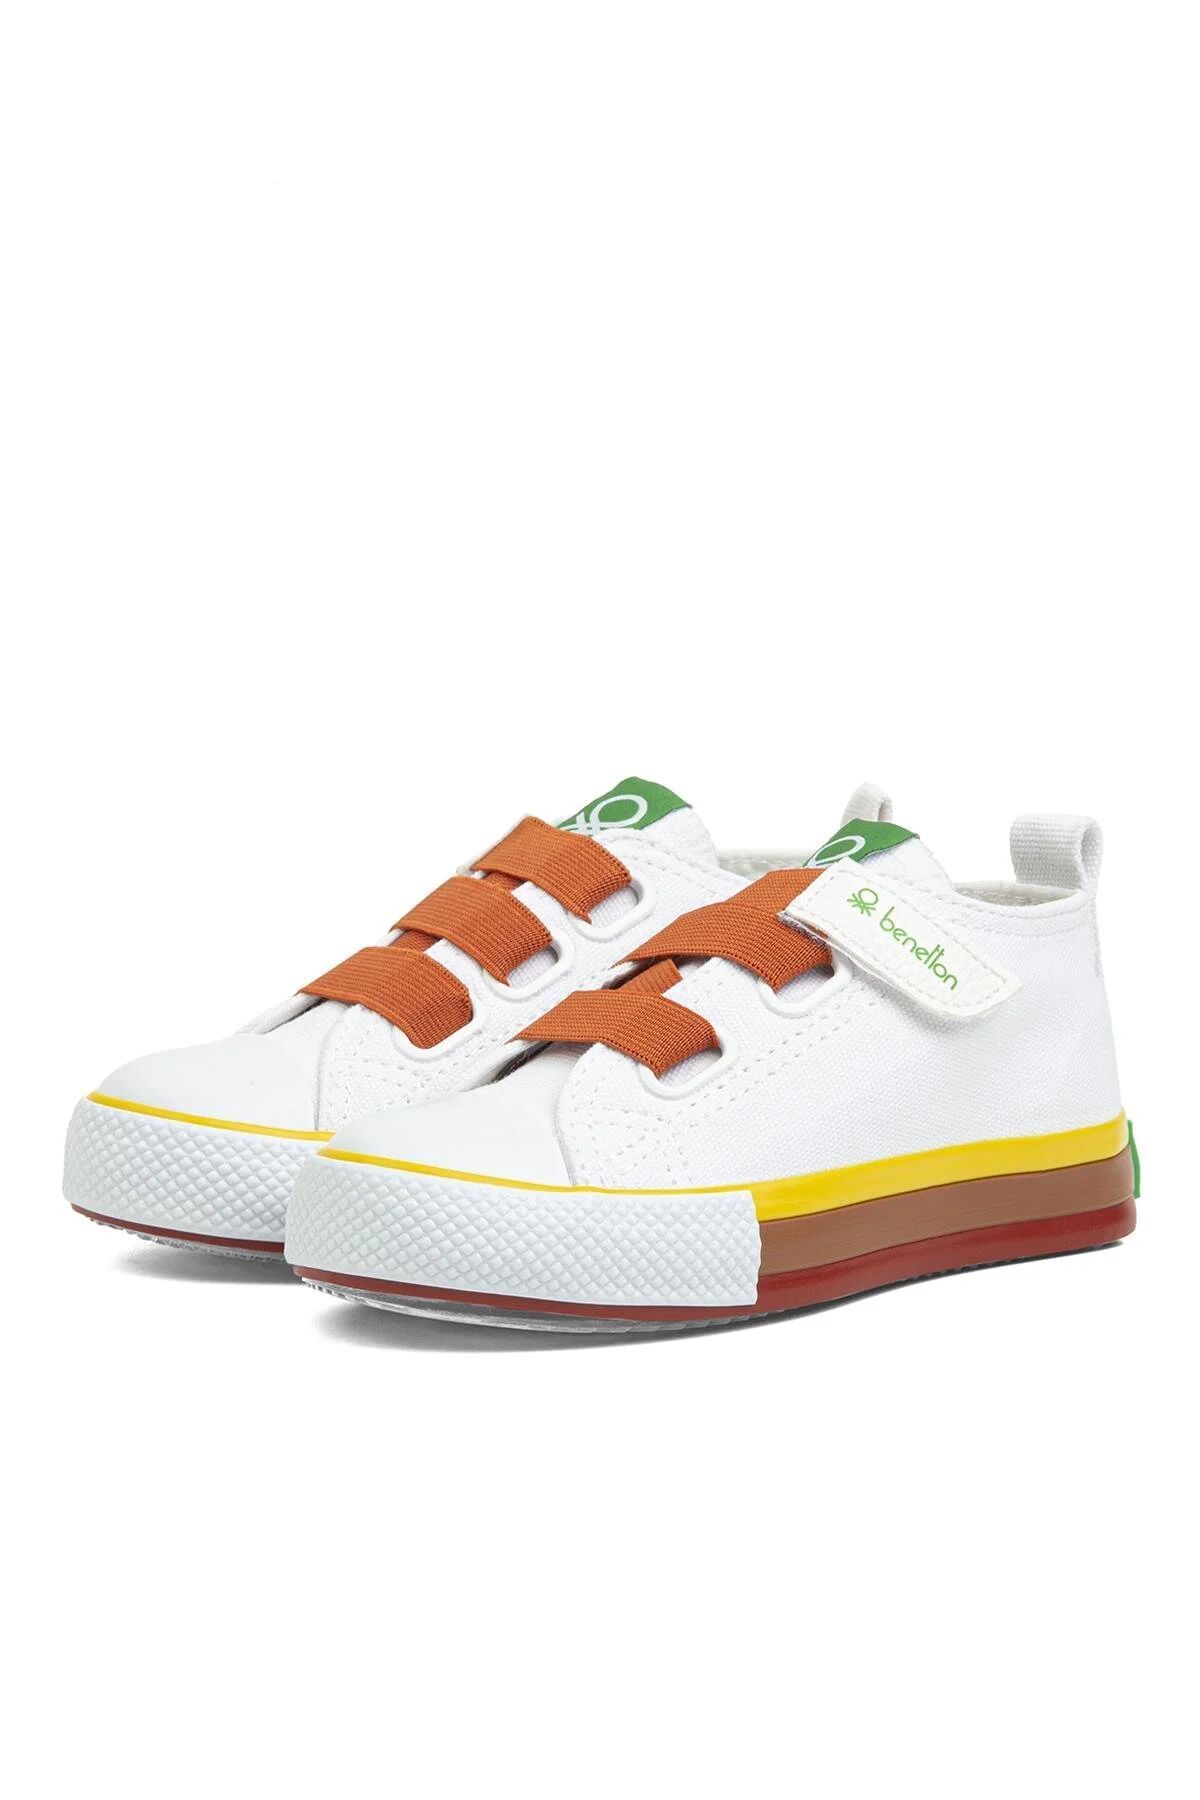 Benetton 30648-30649 Beyaz Turuncu Çocuk Spor Ayakkabı